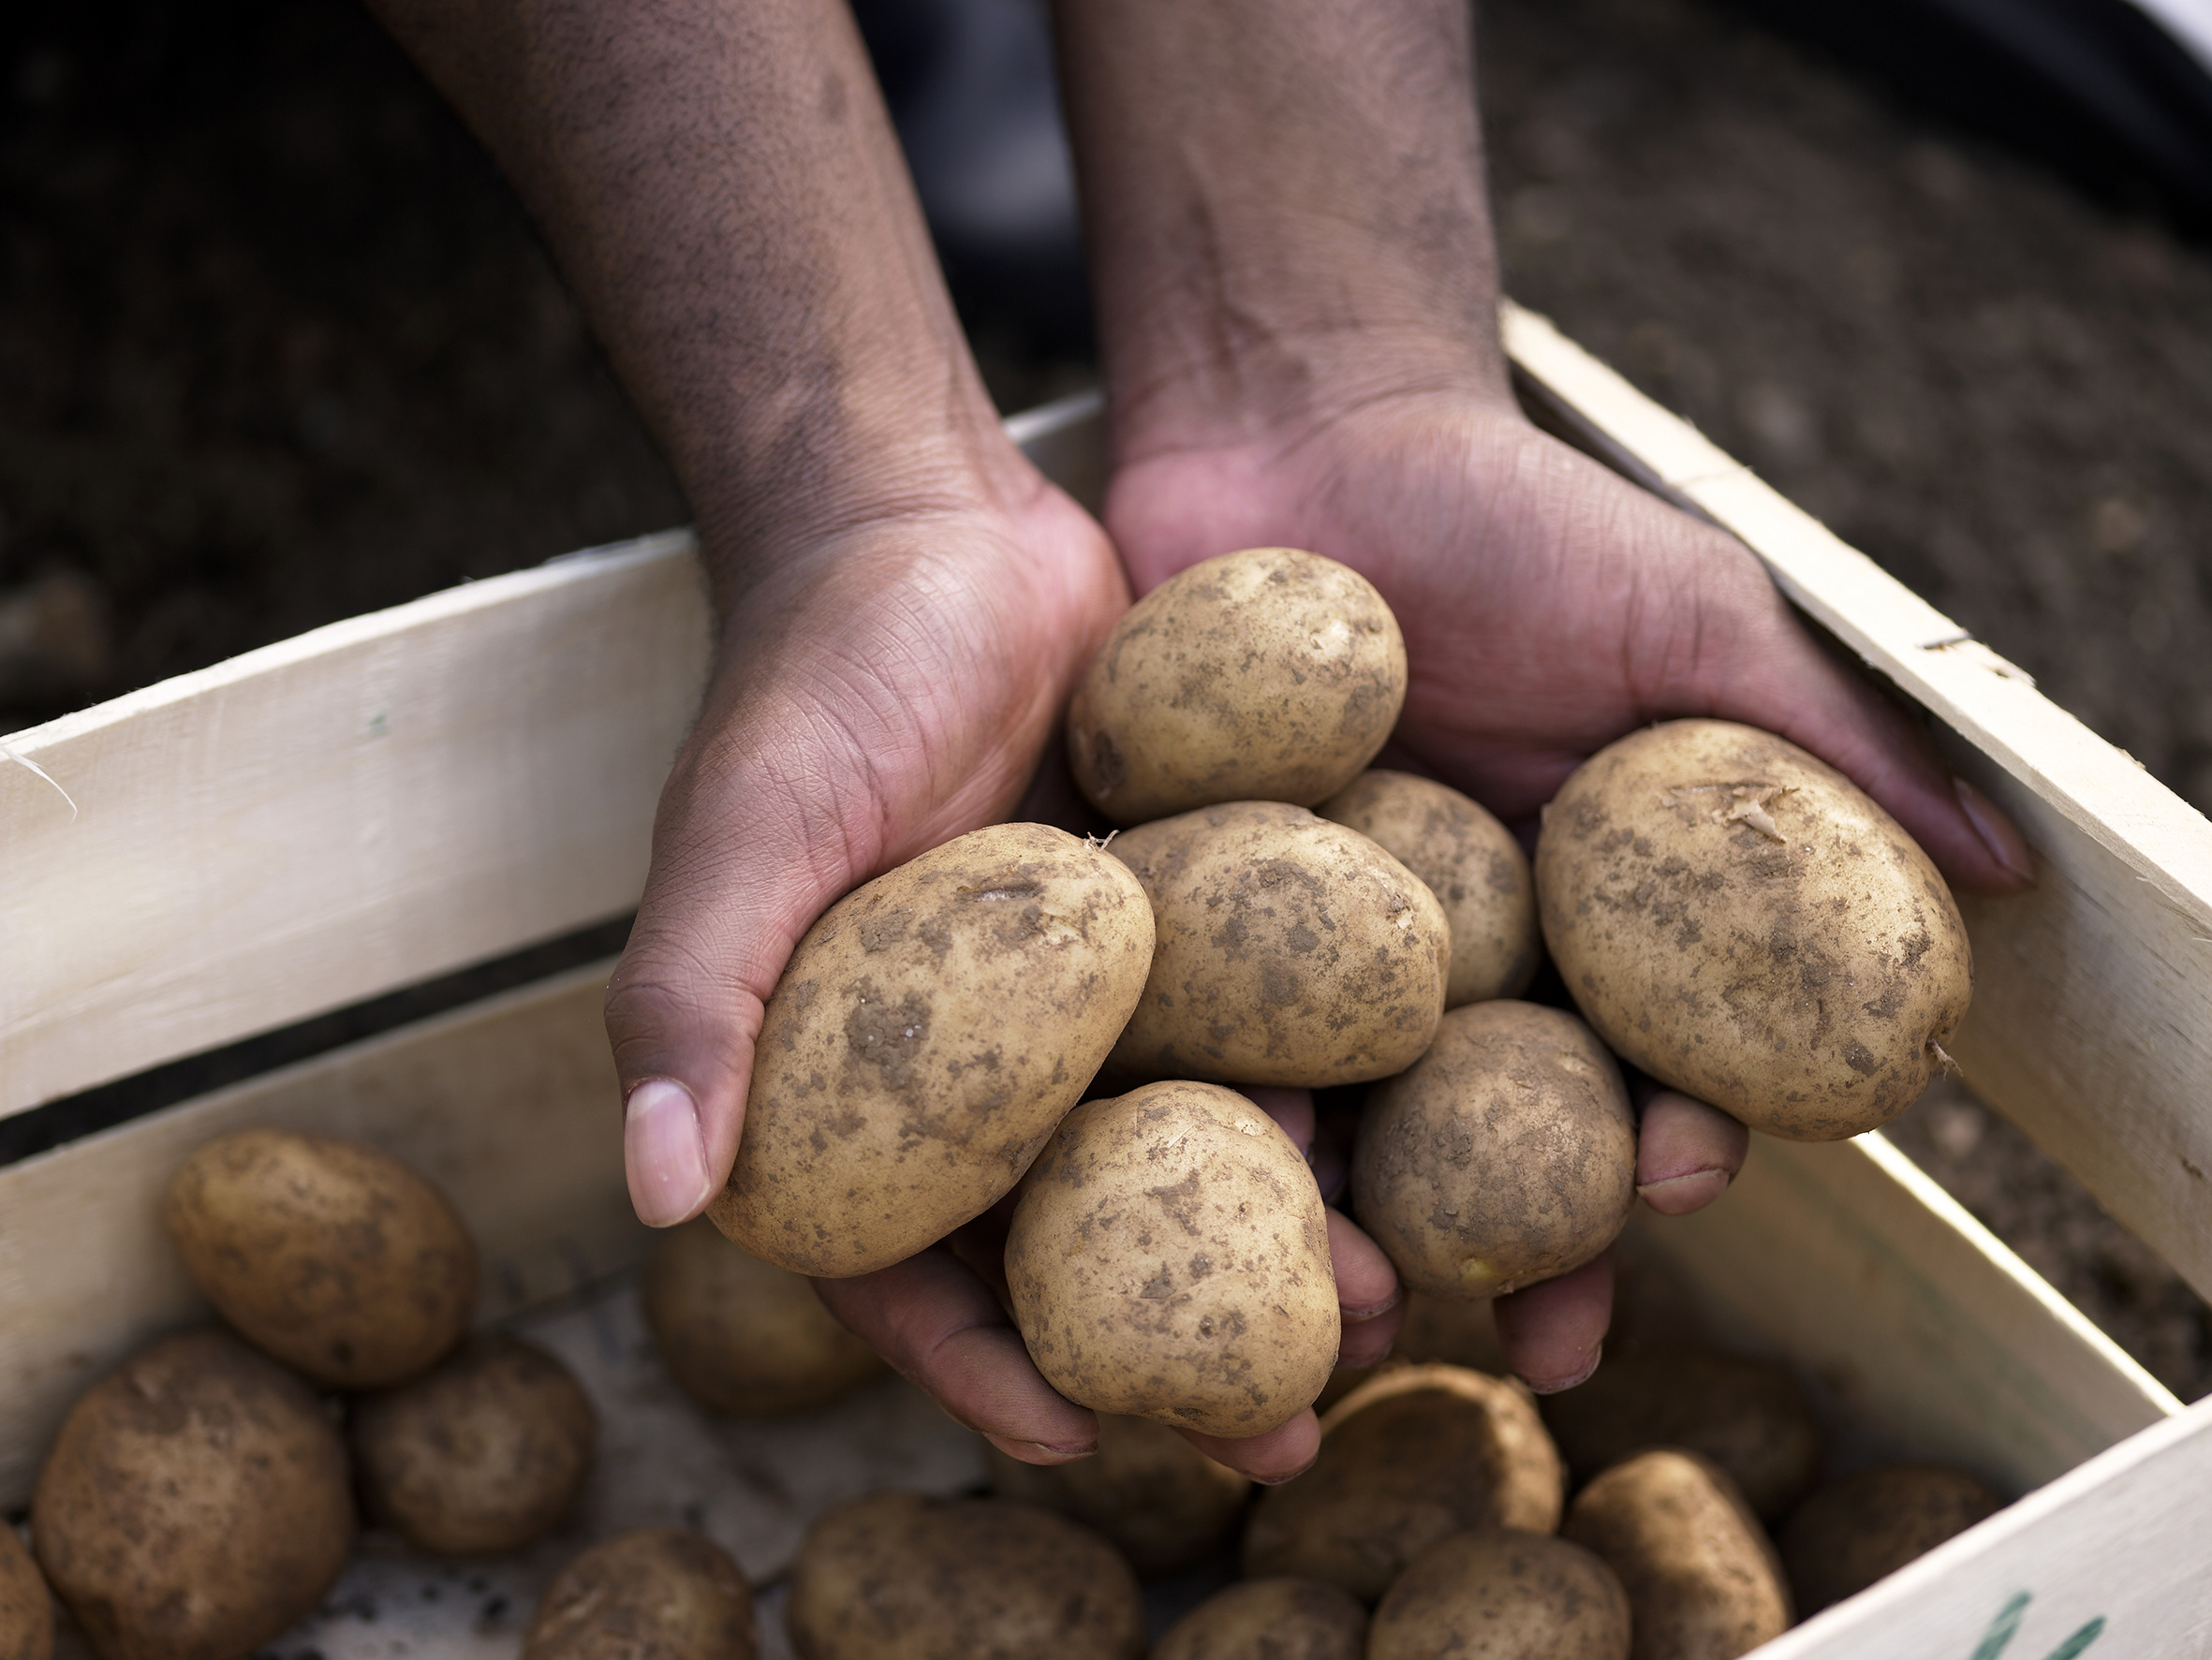 A man holding muddy potatoes